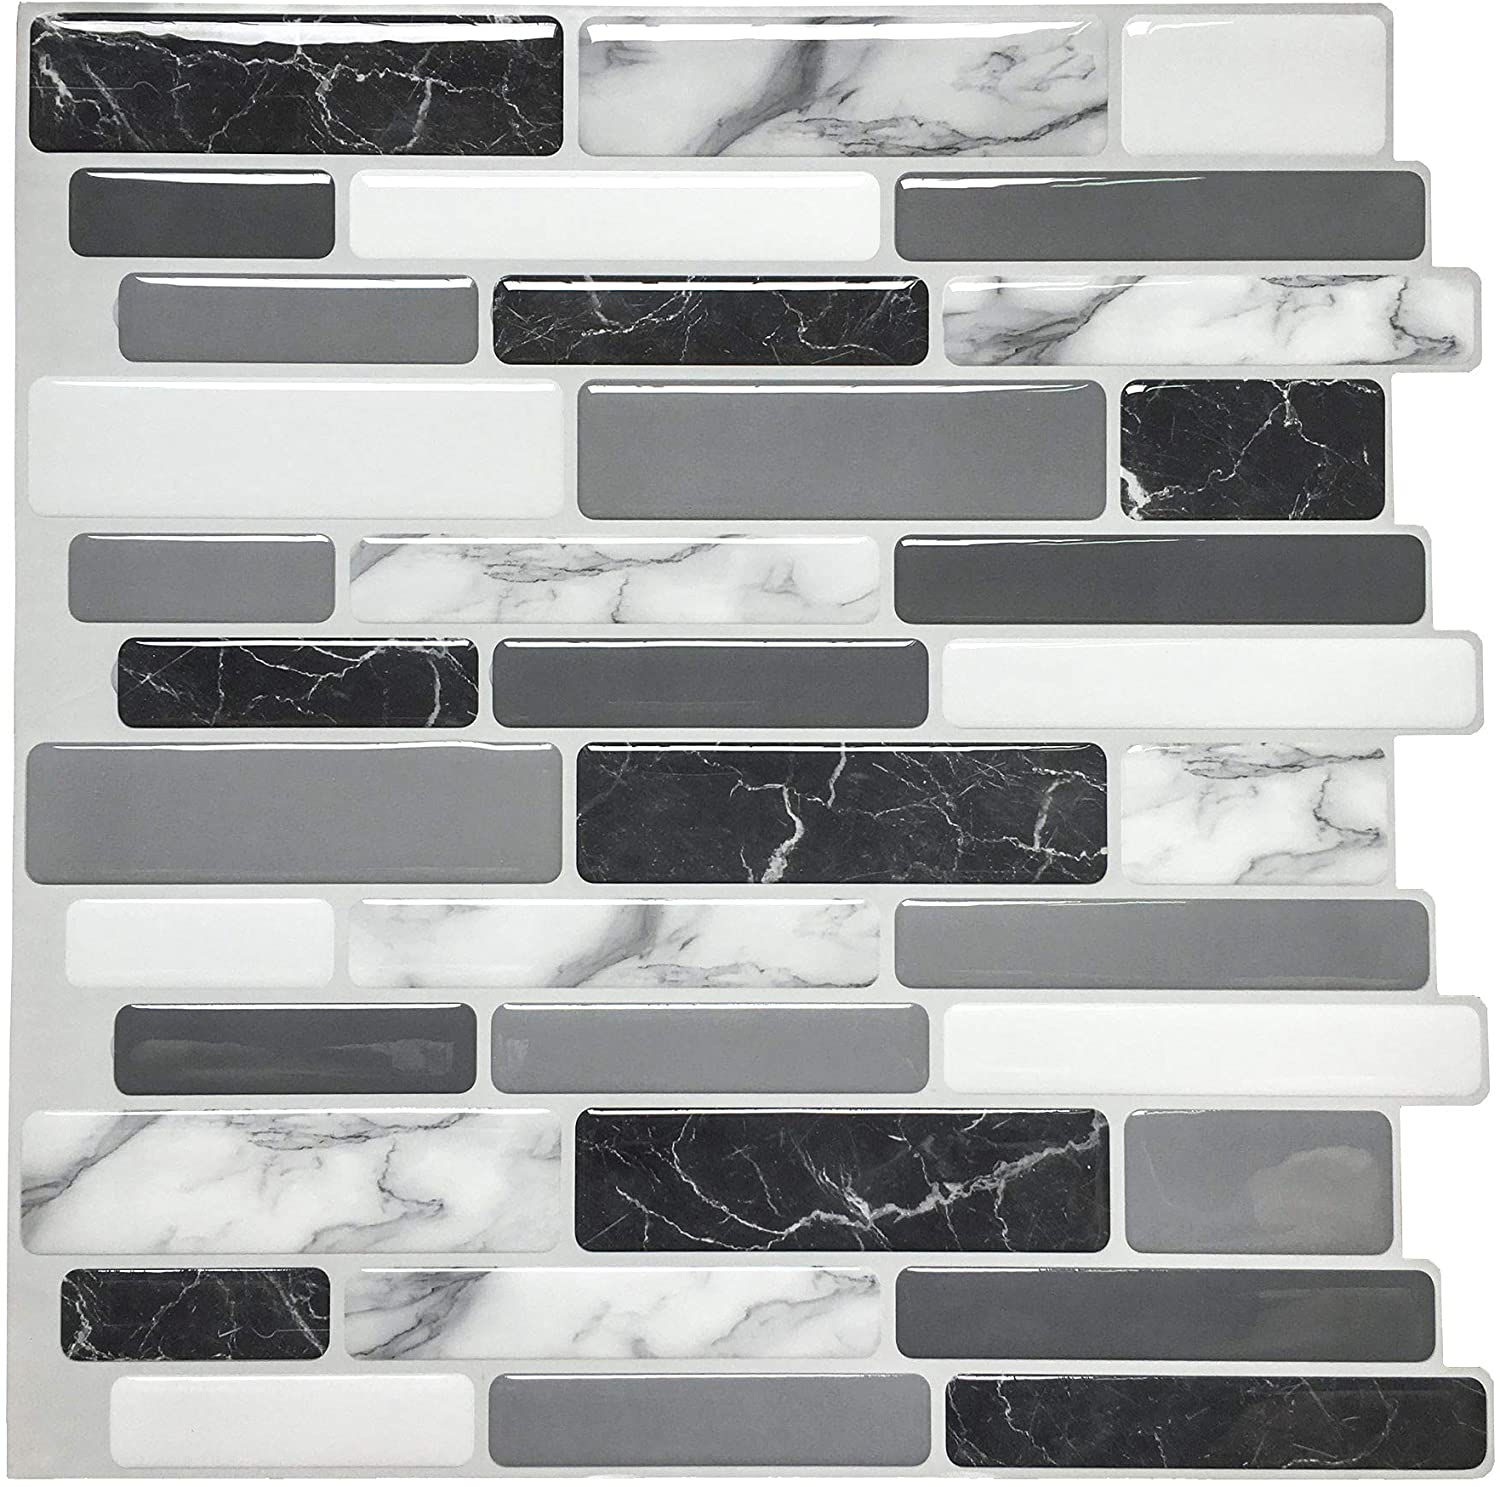 Art3d Peel and Stick Wall Tile for Kitchen Backsplash, 12